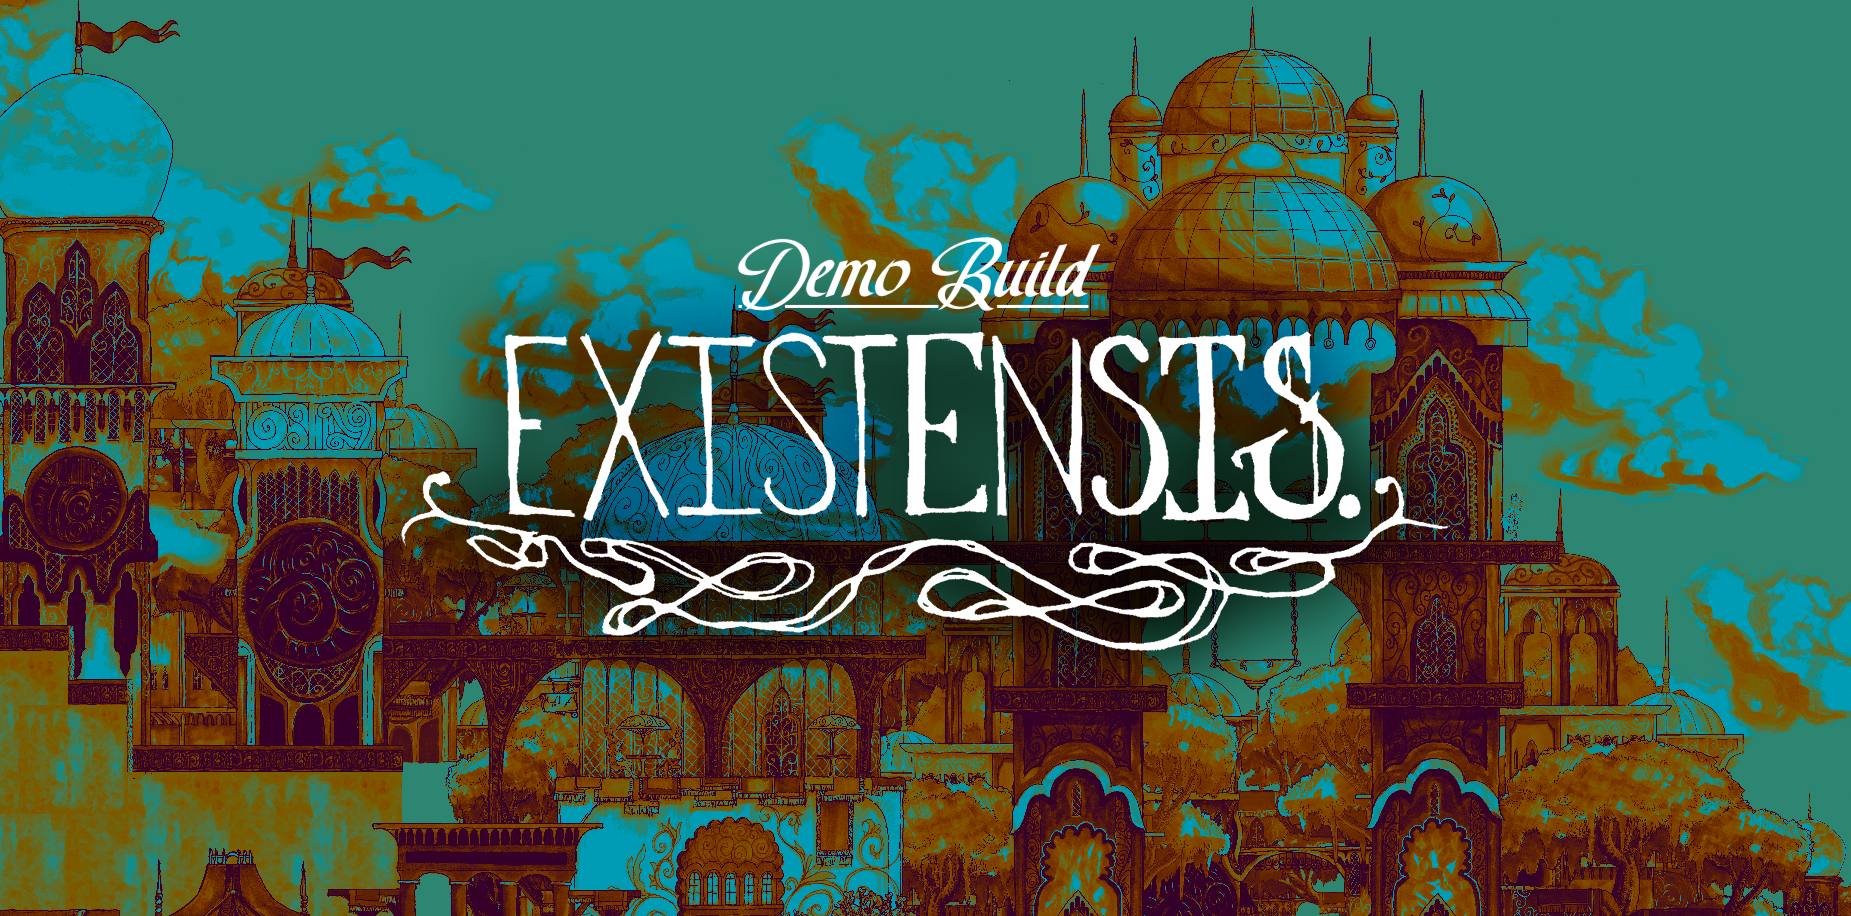 EXISTENSIS (demo build)